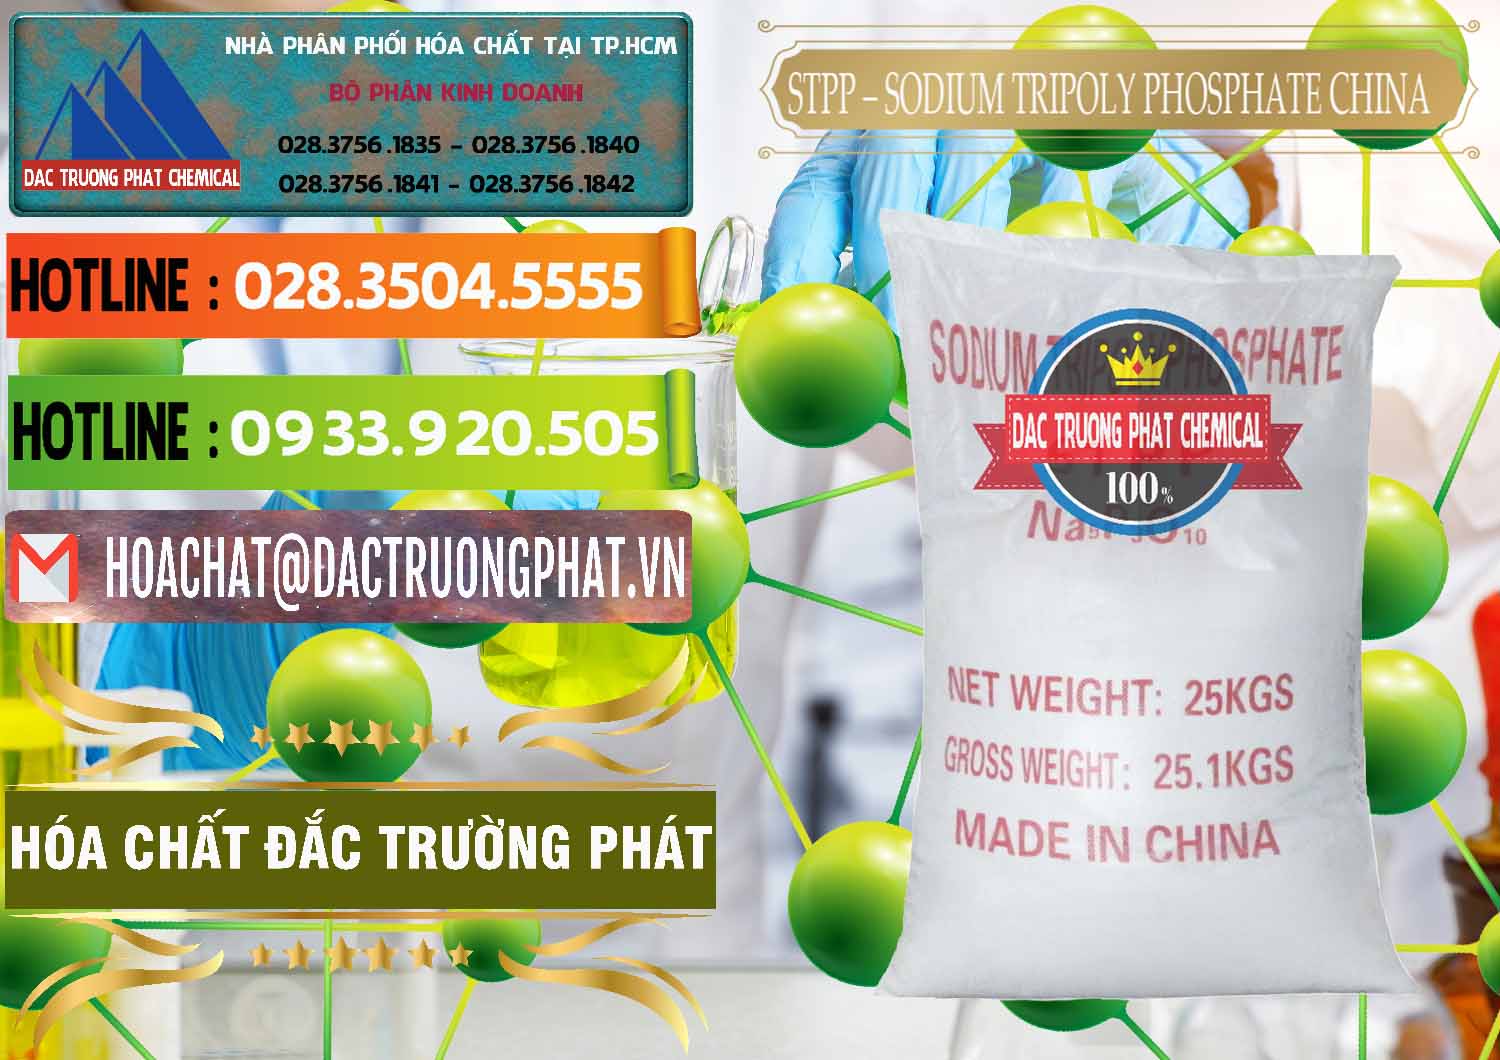 Nơi chuyên bán - cung ứng Sodium Tripoly Phosphate - STPP 96% Chữ Đỏ Trung Quốc China - 0155 - Cty bán ( phân phối ) hóa chất tại TP.HCM - cungcaphoachat.com.vn